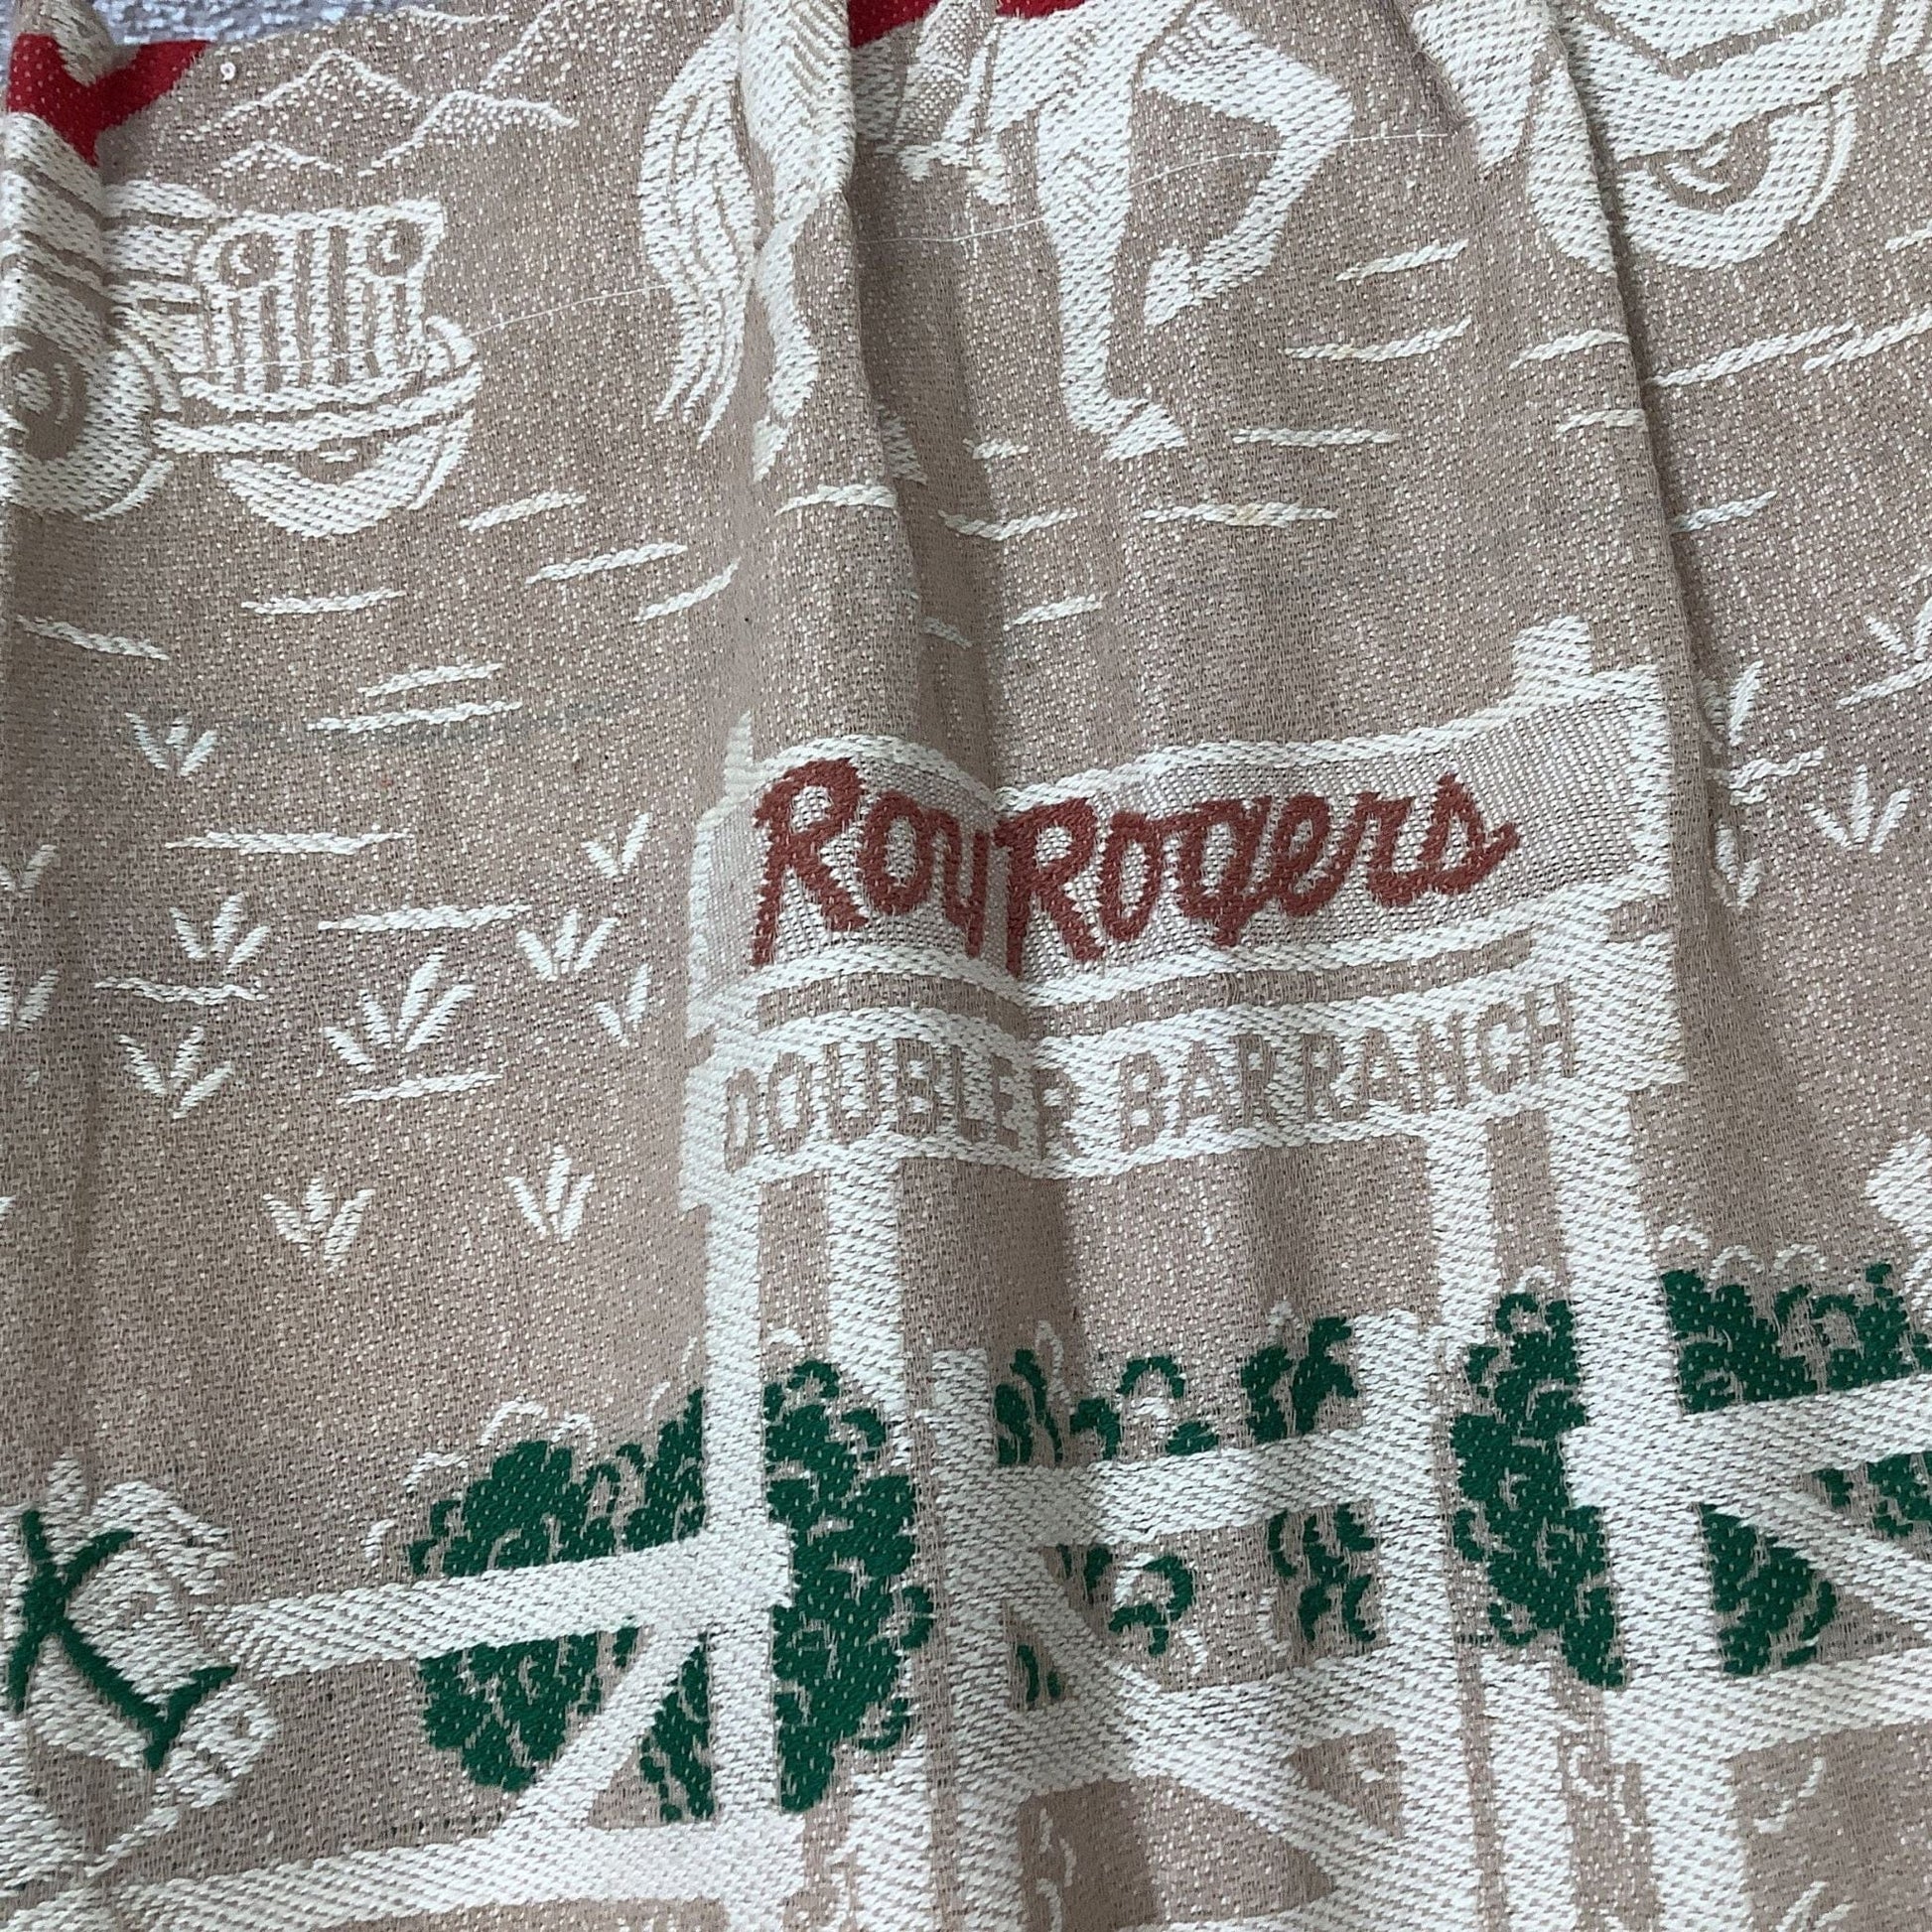 Retro Roy Rogers Curtains Multi / Cotton / Vintage 1950s